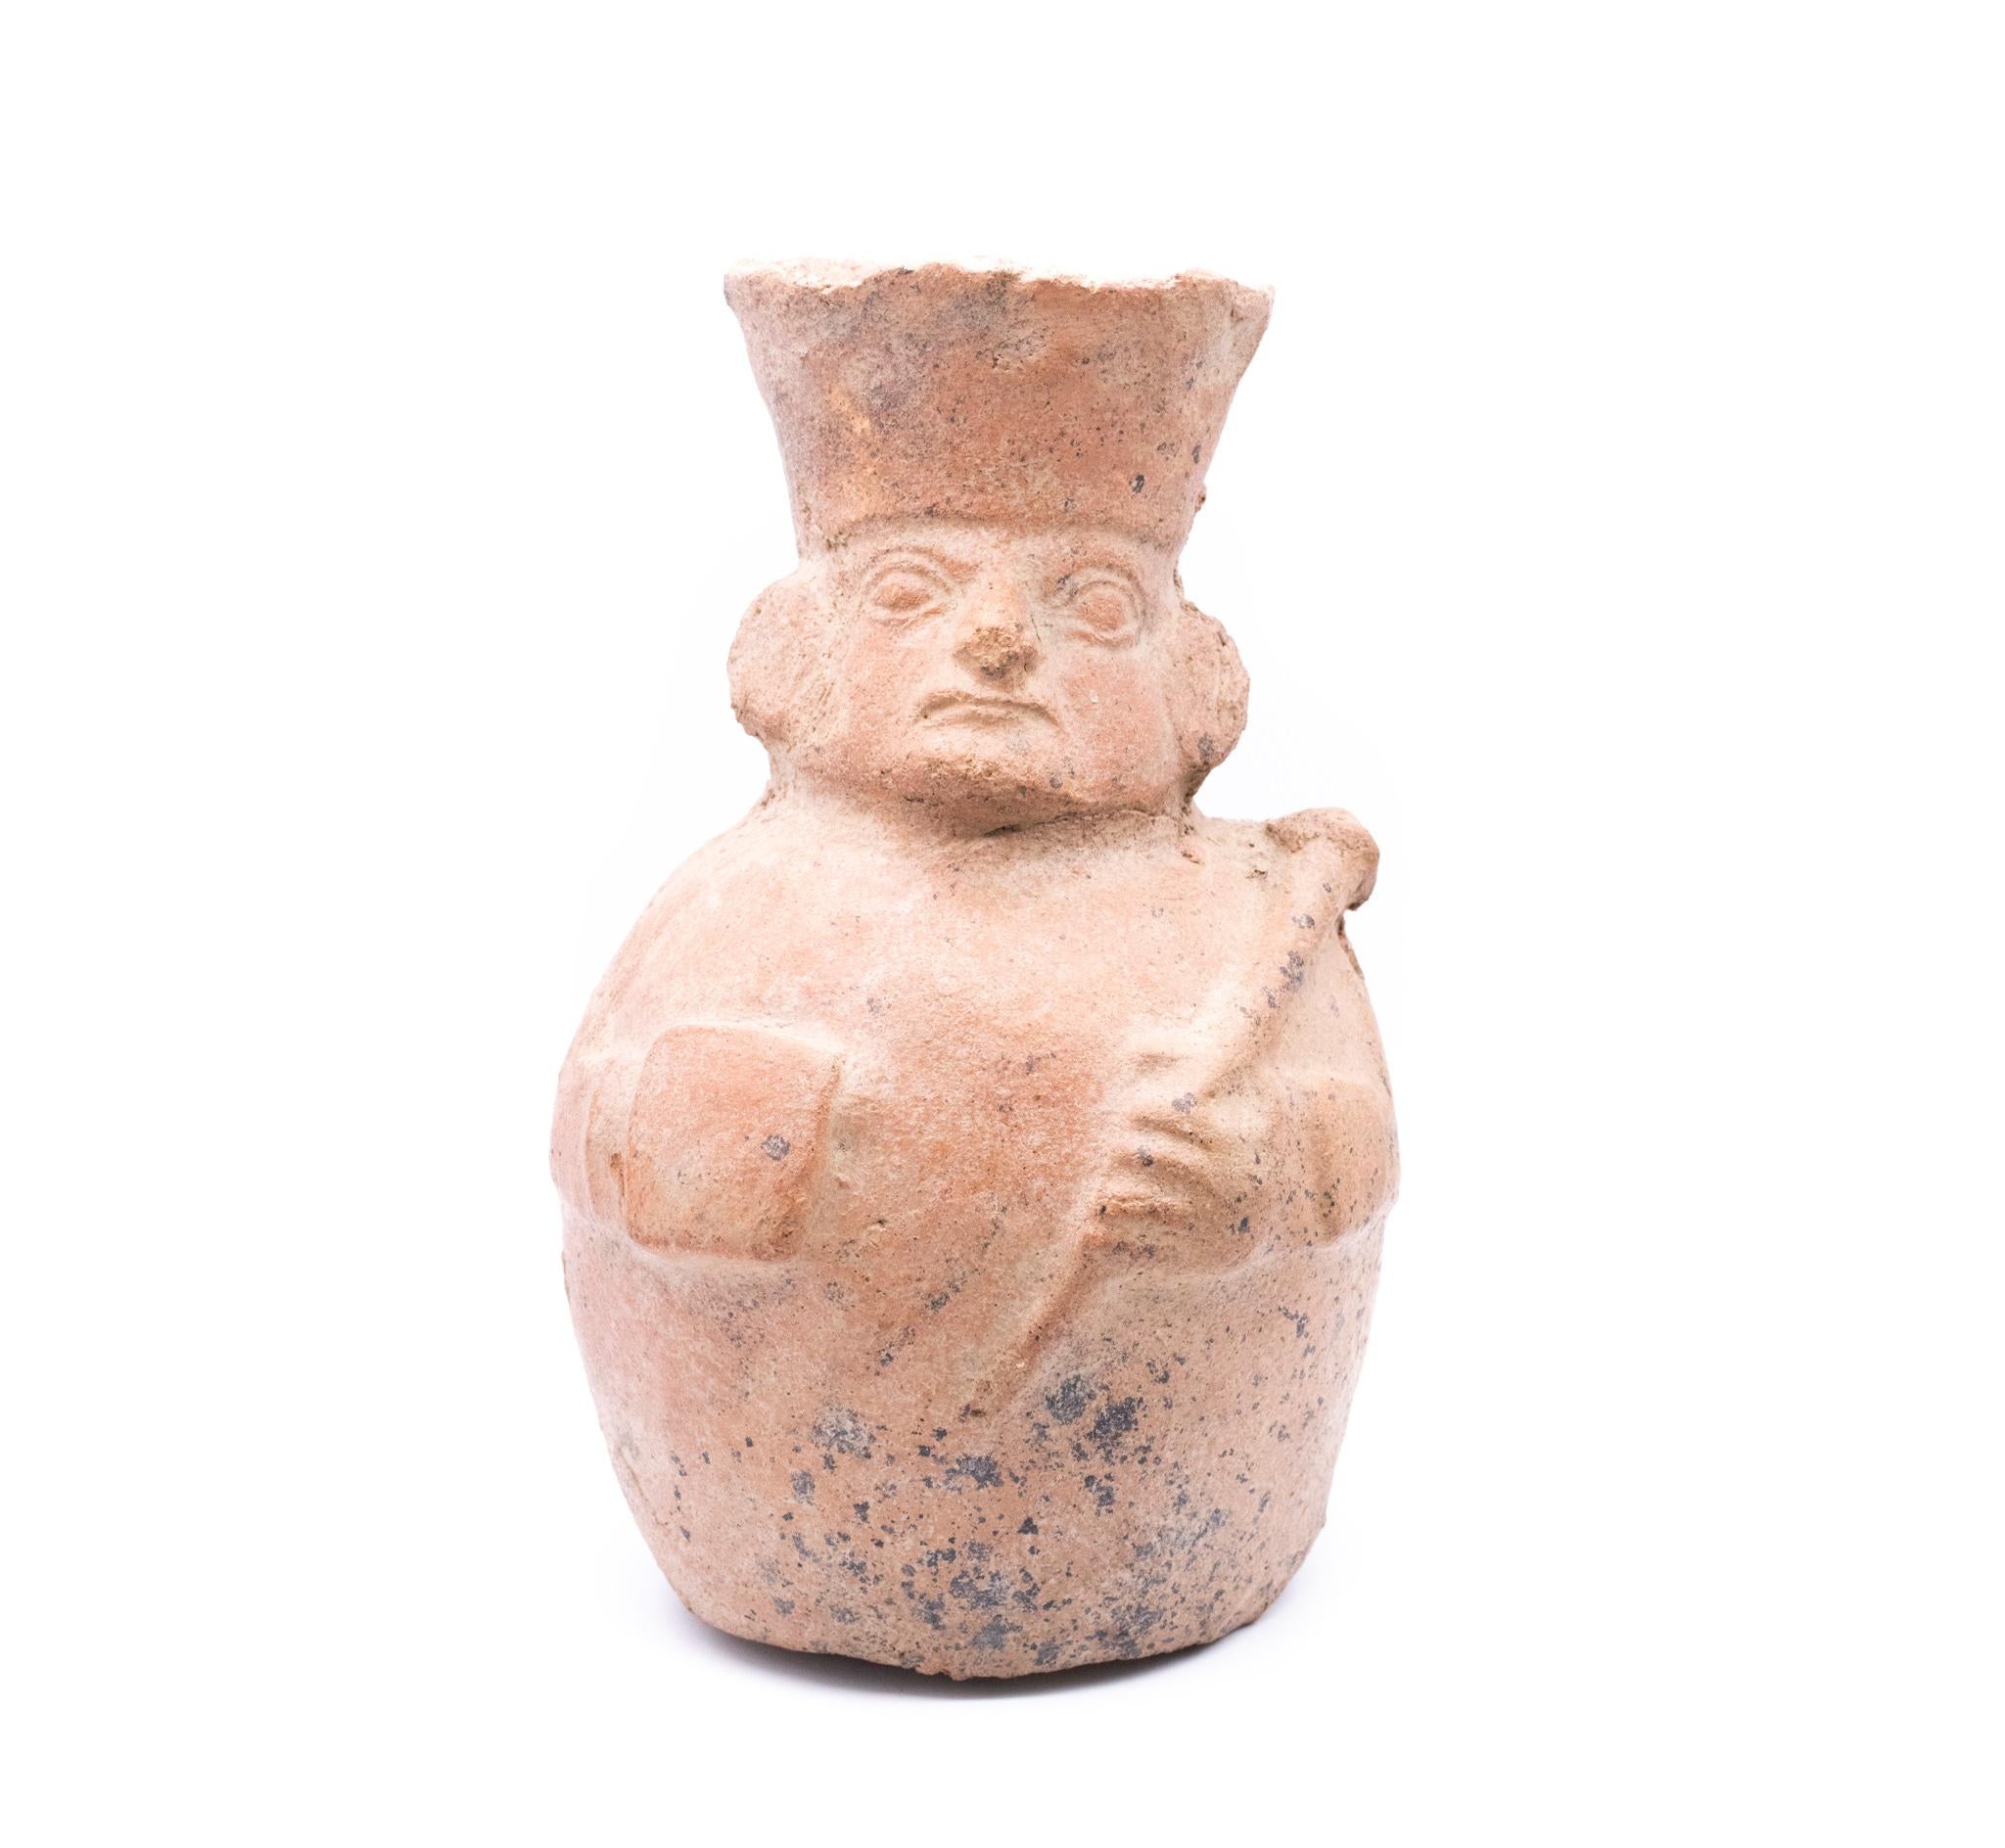 Seltenes Steingutgefäß aus der vorspanischen Moche-Kultur und aus der Zeit vor den Inkas.

Ein schönes, interessantes Stück, das in der südlichen Region Perus um 100-700 n. Chr. von der Moche-Kultur geschaffen wurde. Dieses seltene frühzeitliche